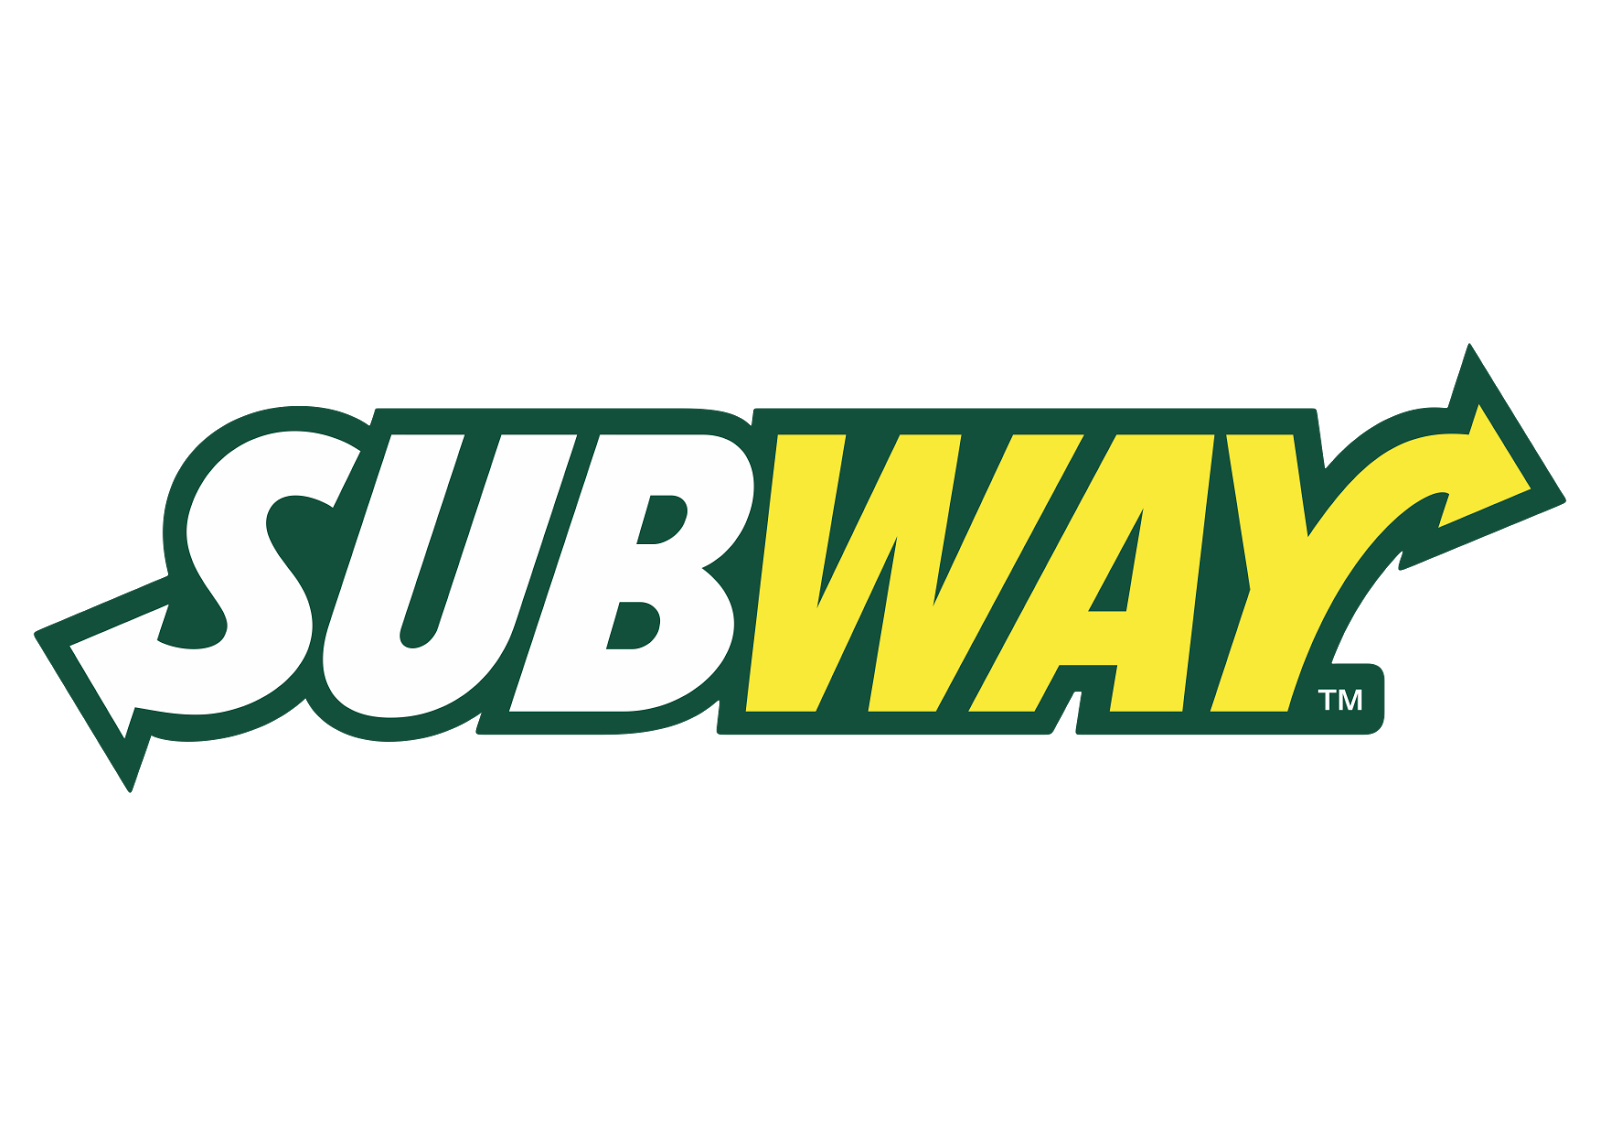 Name : Subway Logo Vector Des